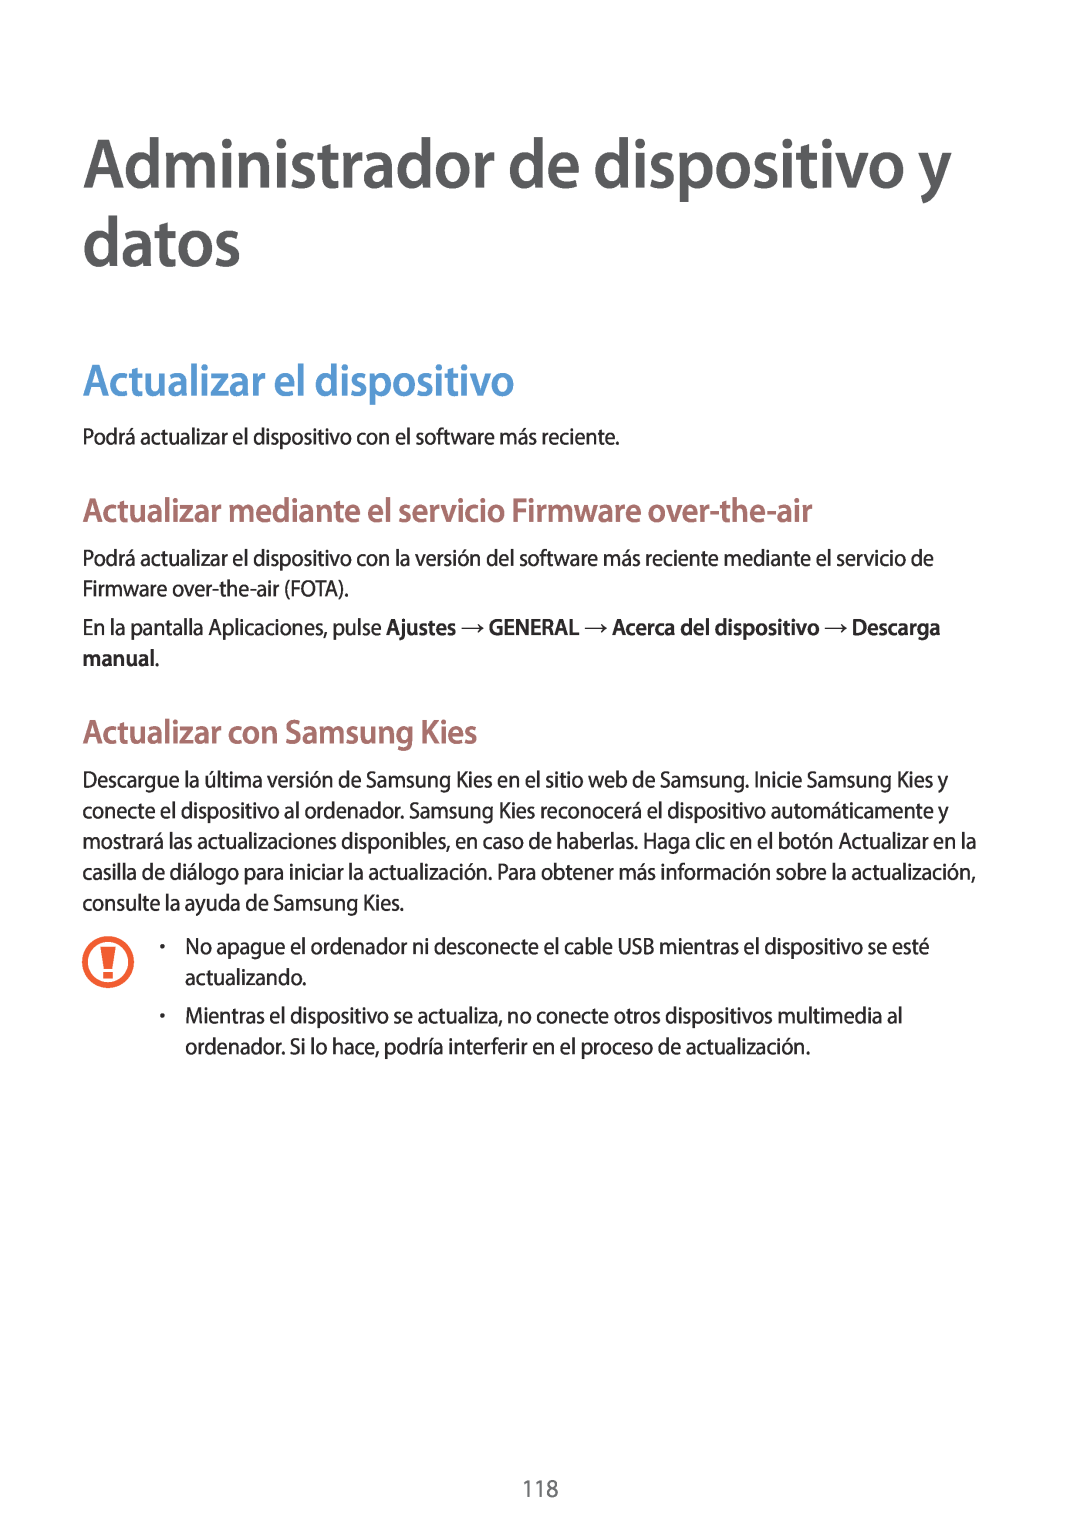 Samsung SM-T800NTSAPHE manual Administrador de dispositivo y datos, Actualizar el dispositivo, Actualizar con Samsung Kies 